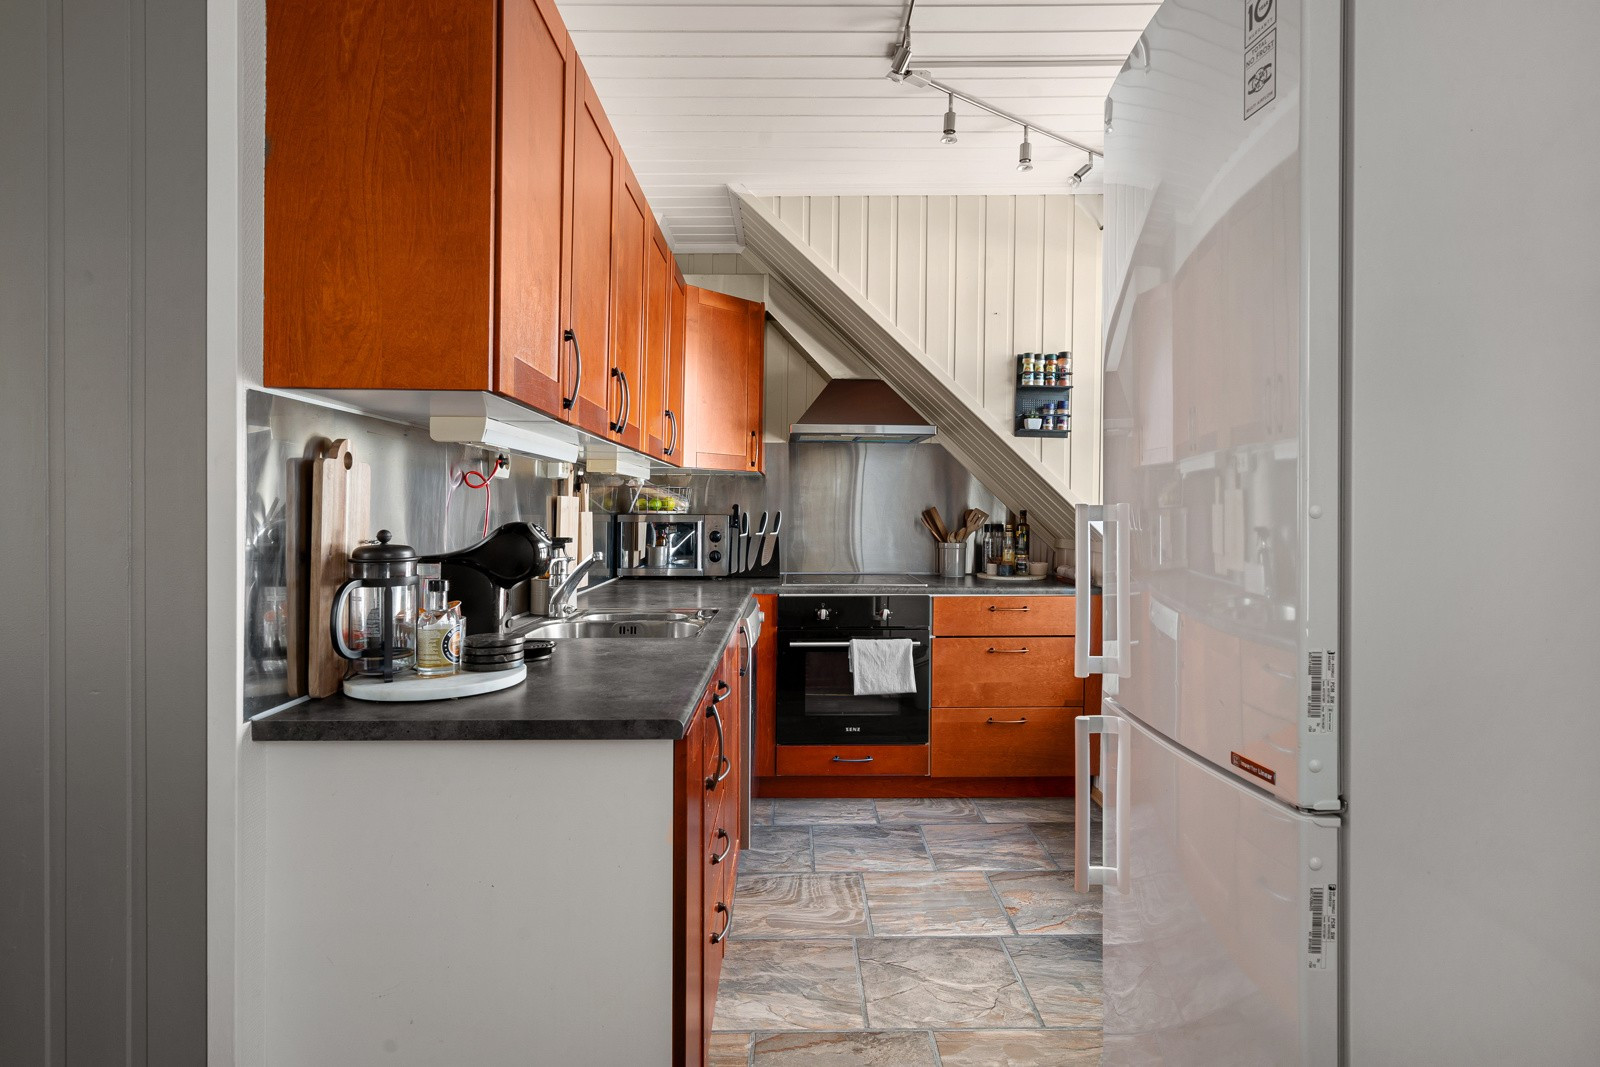 Kjøkkenet har rikelig med oppbevaringsplass i over- og underskap samt rikelig med arbeidsplass på kjøkkenbenken